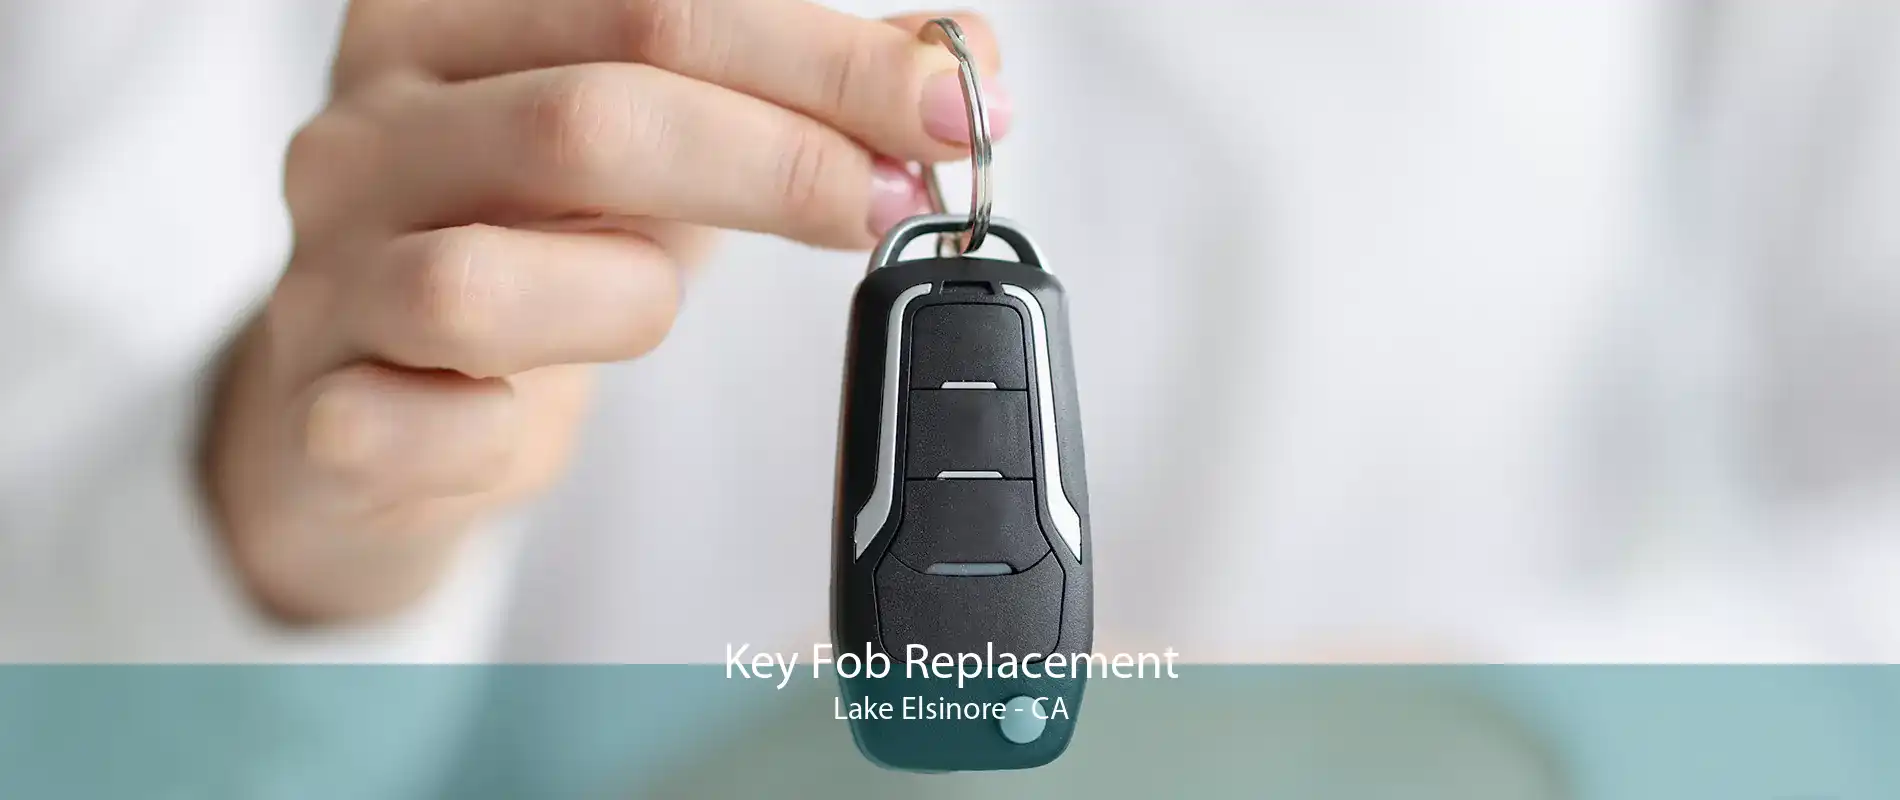 Key Fob Replacement Lake Elsinore - CA